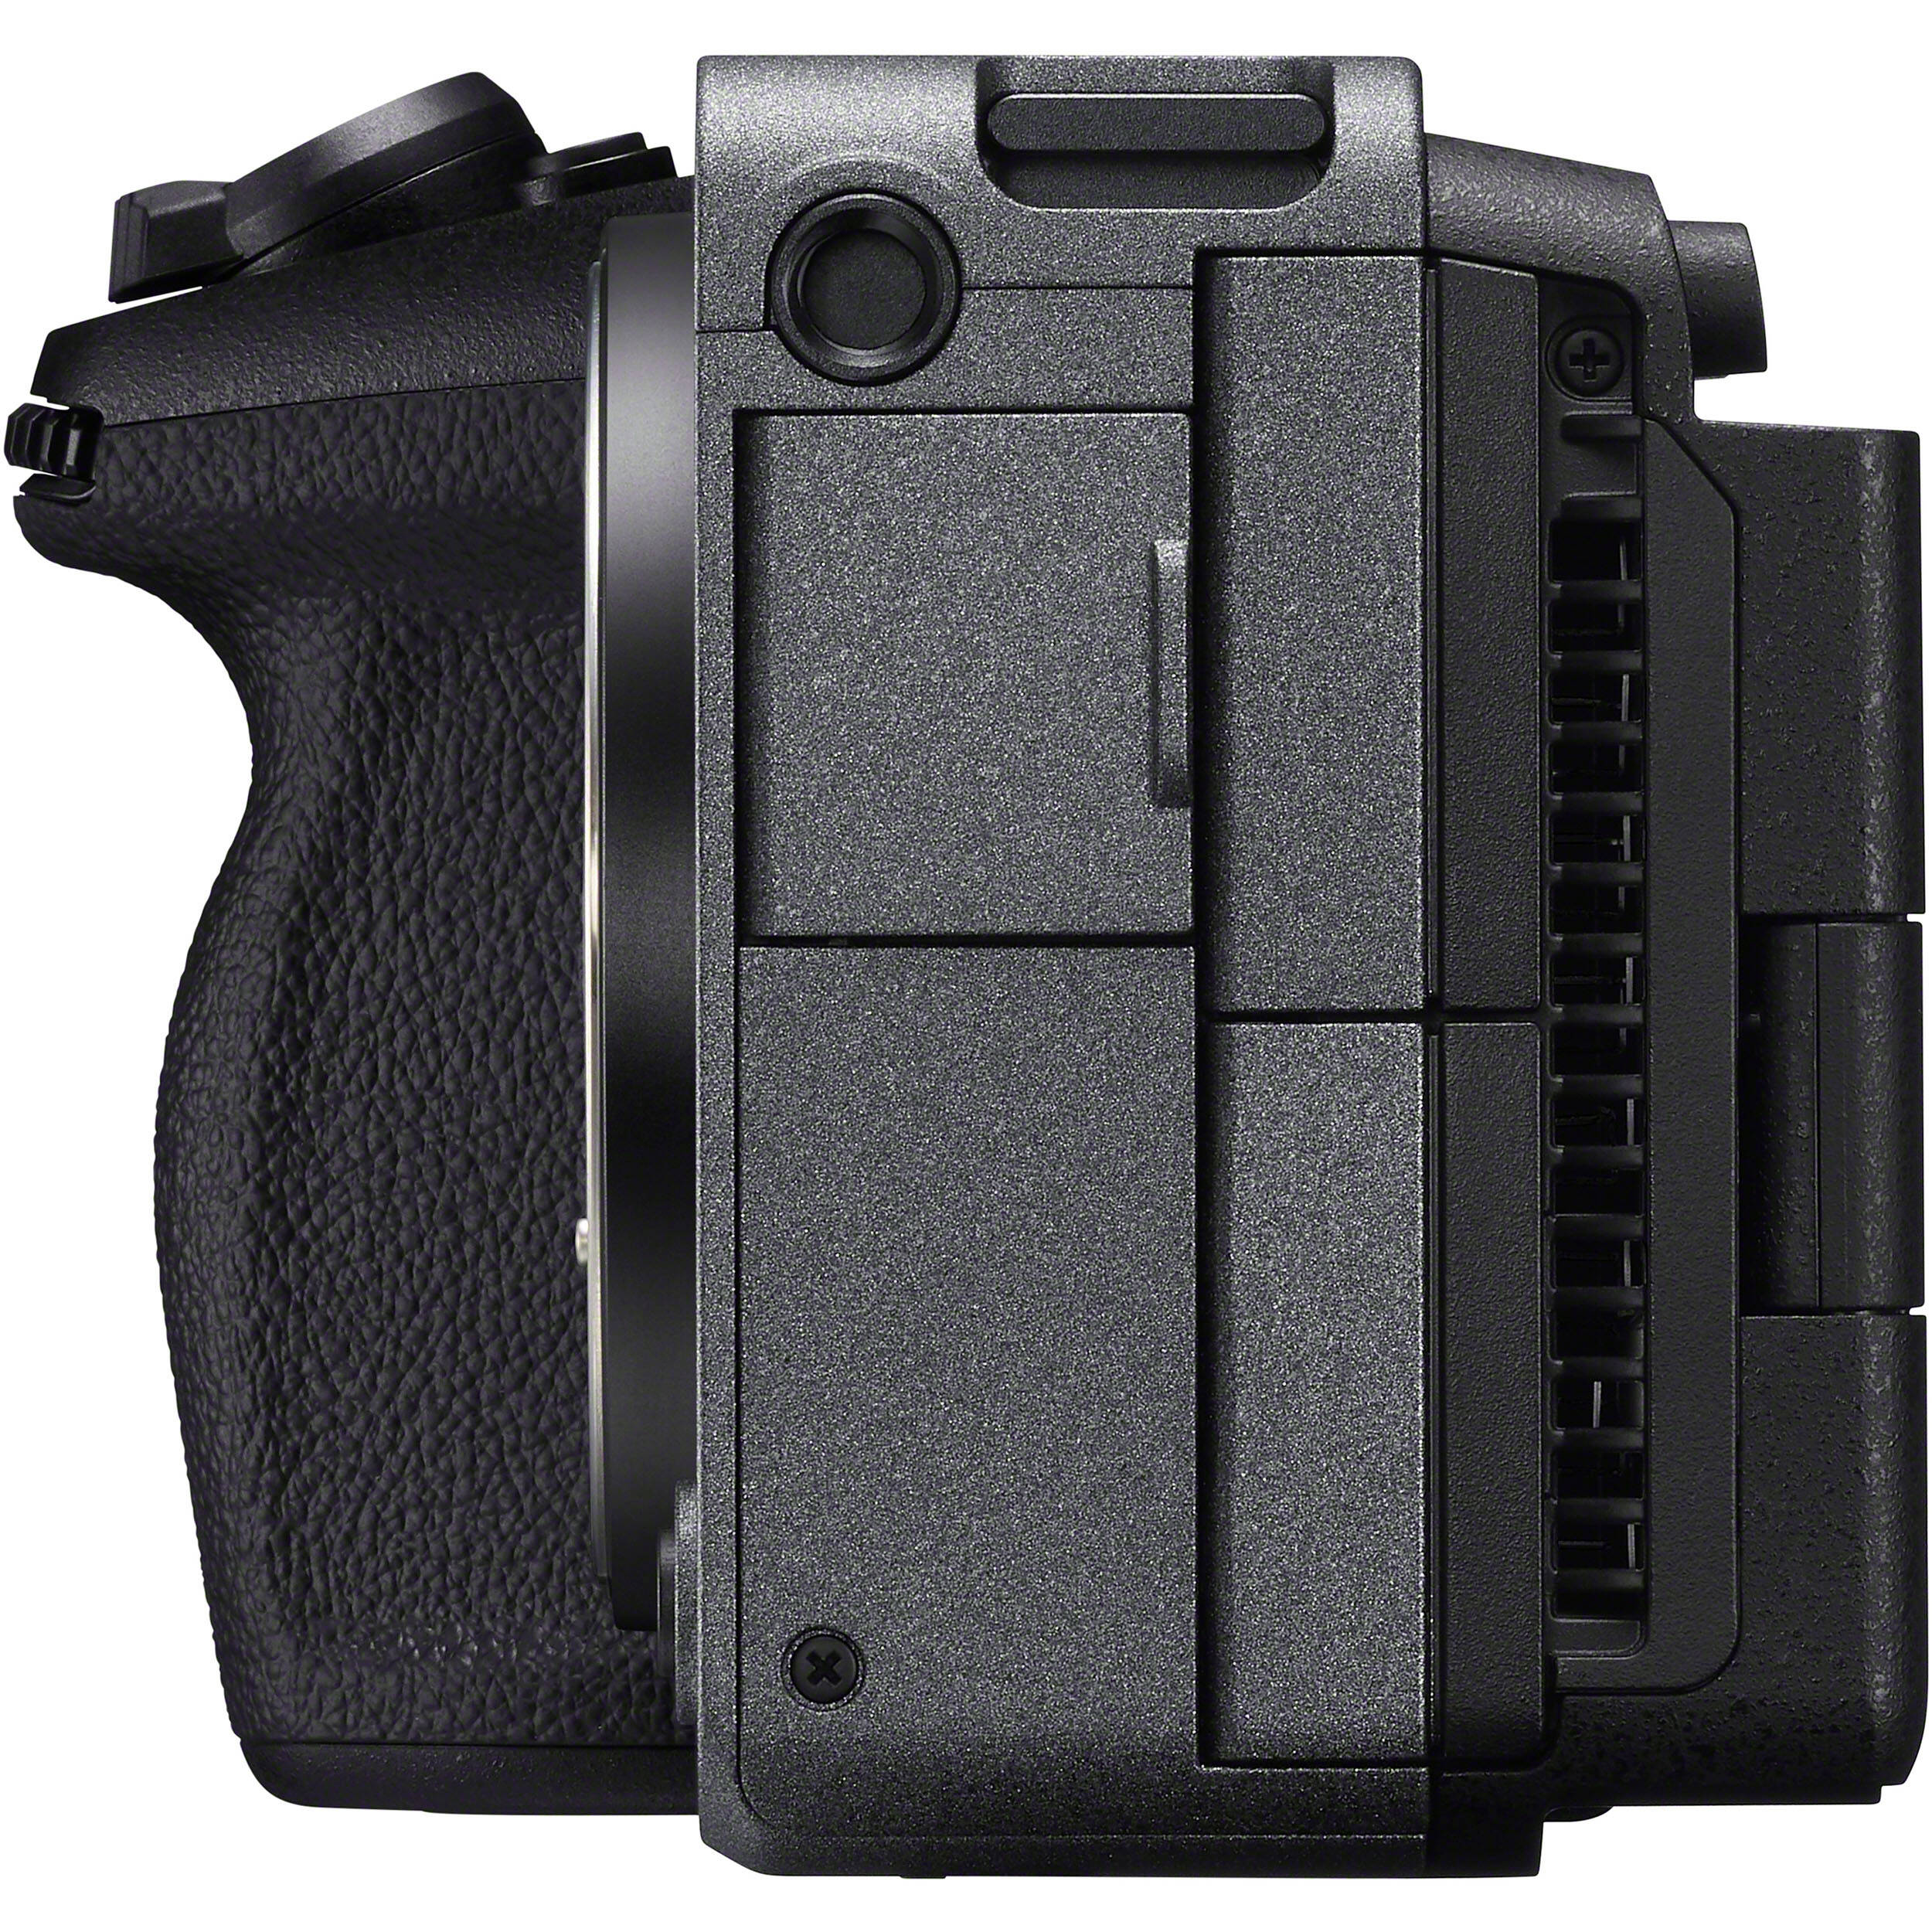 Caméra de cinéma numérique Sony FX30 avec unité de poignée XLR